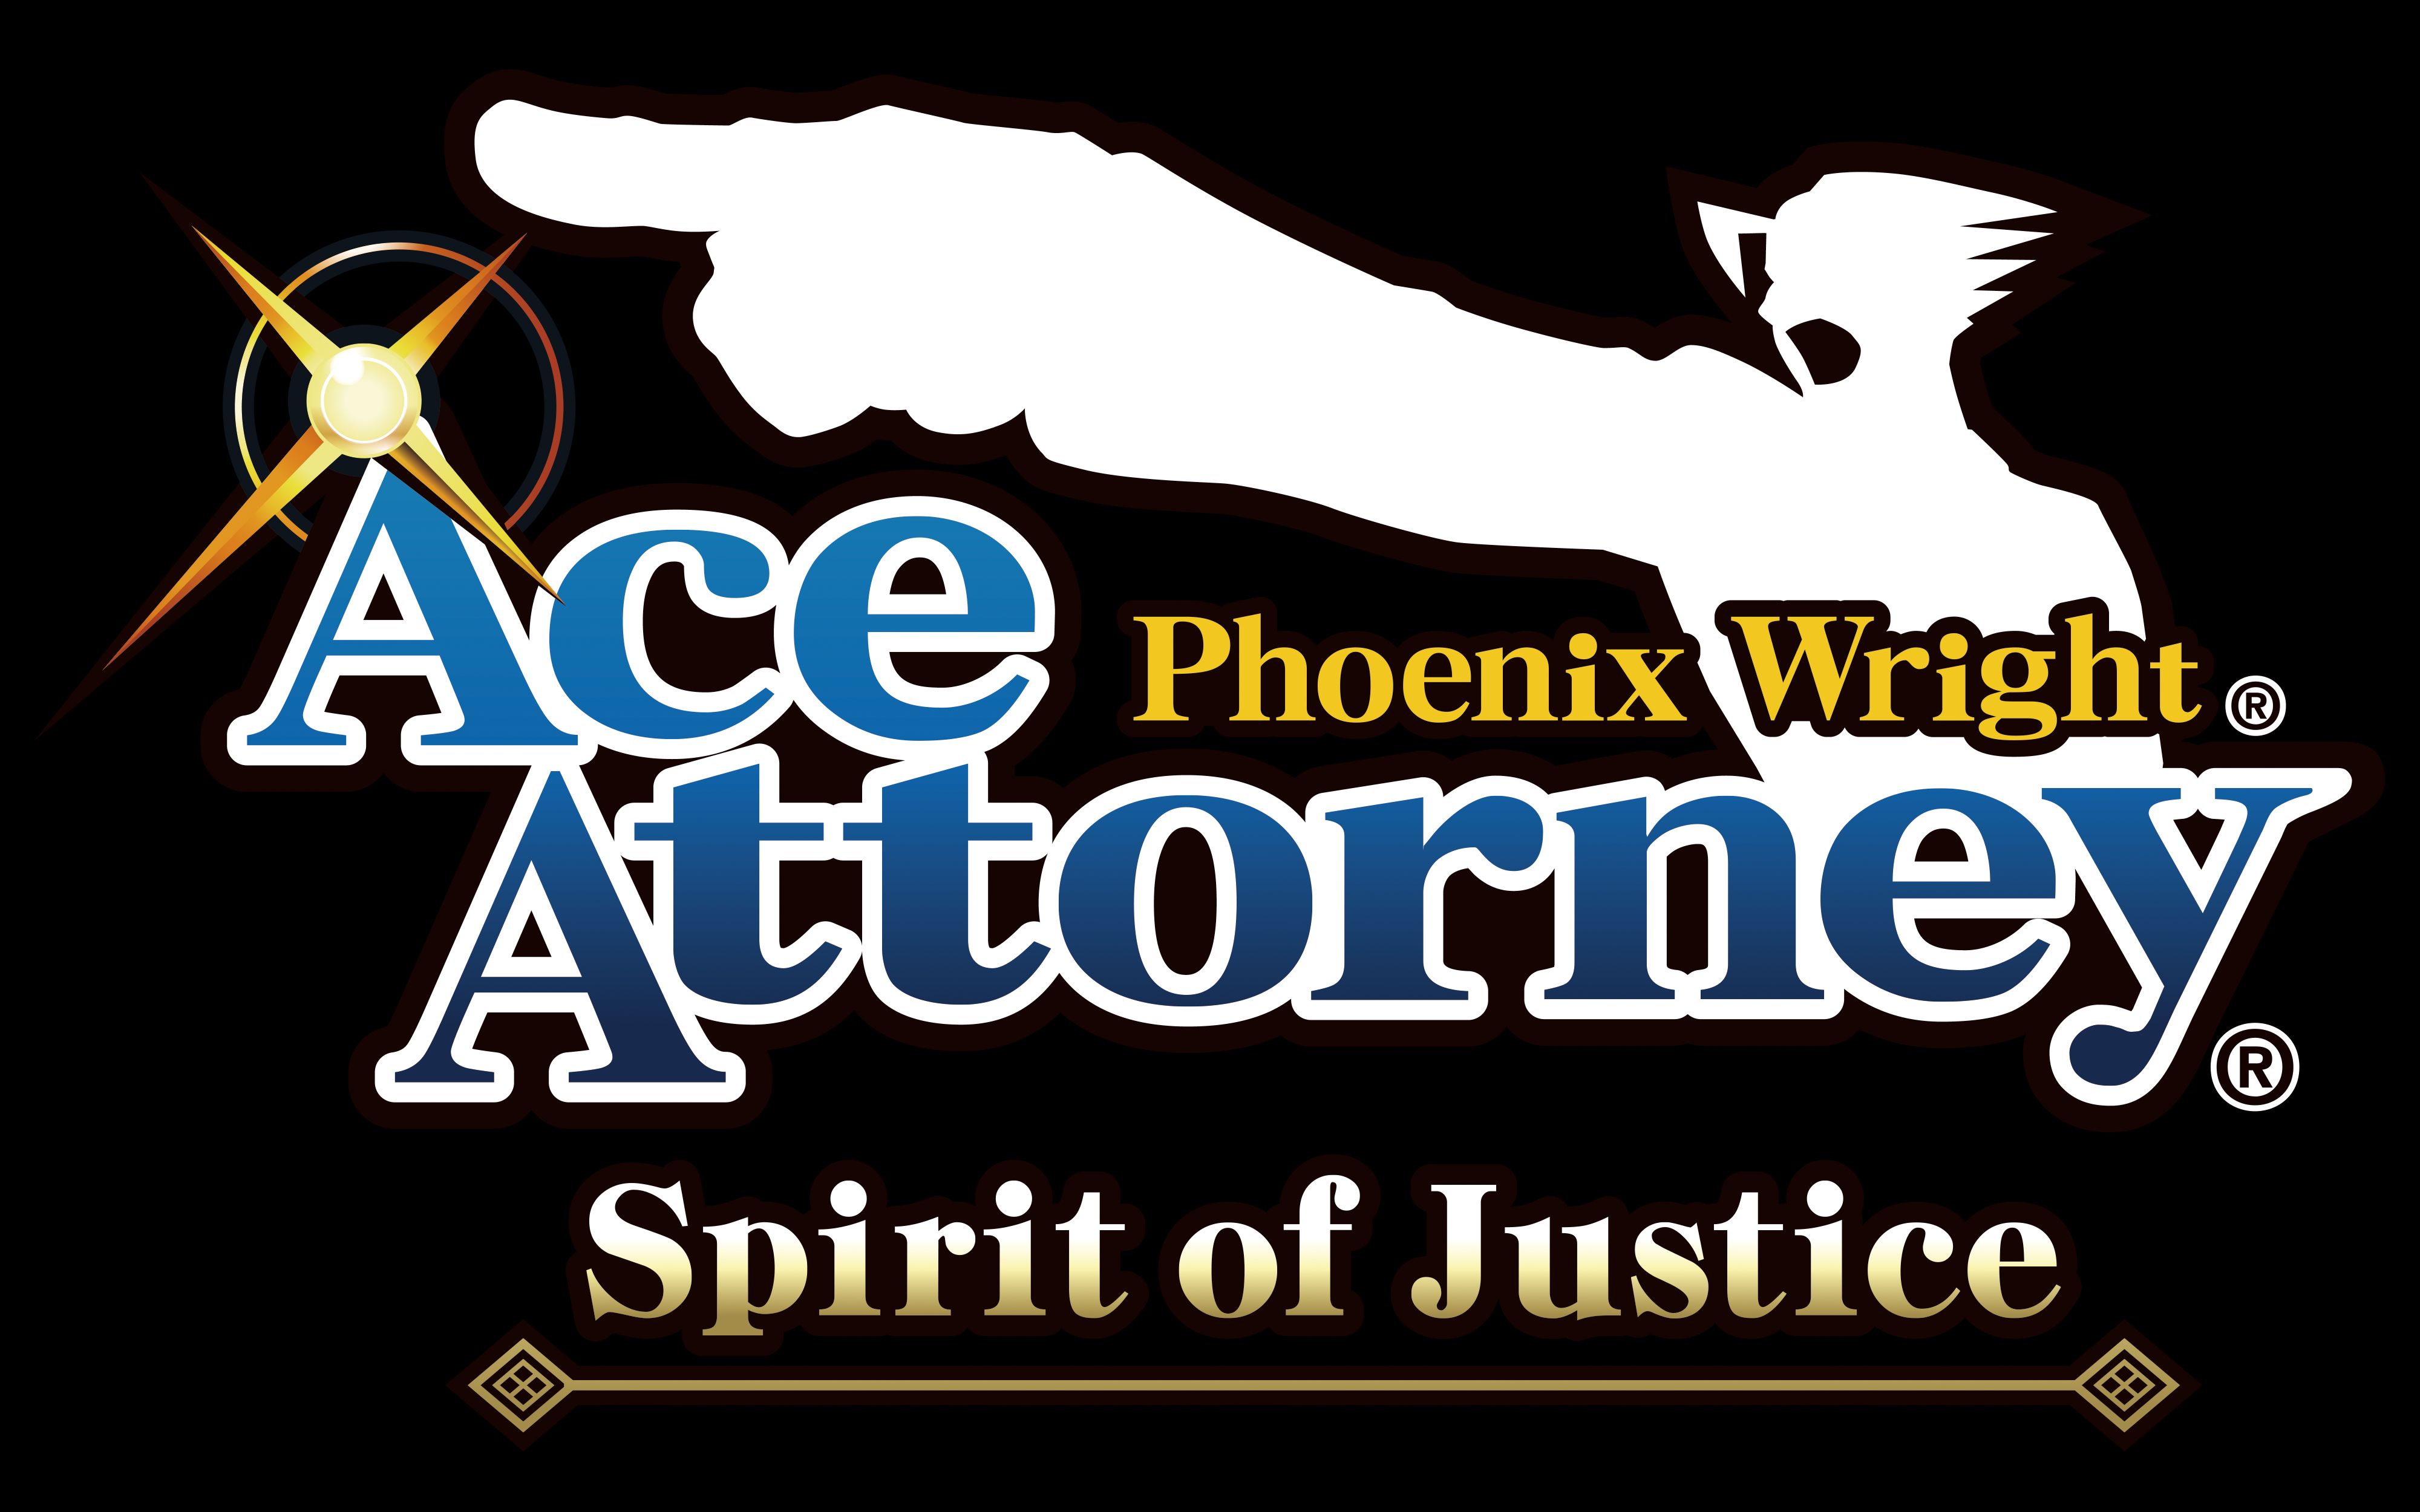 Spirit of justice